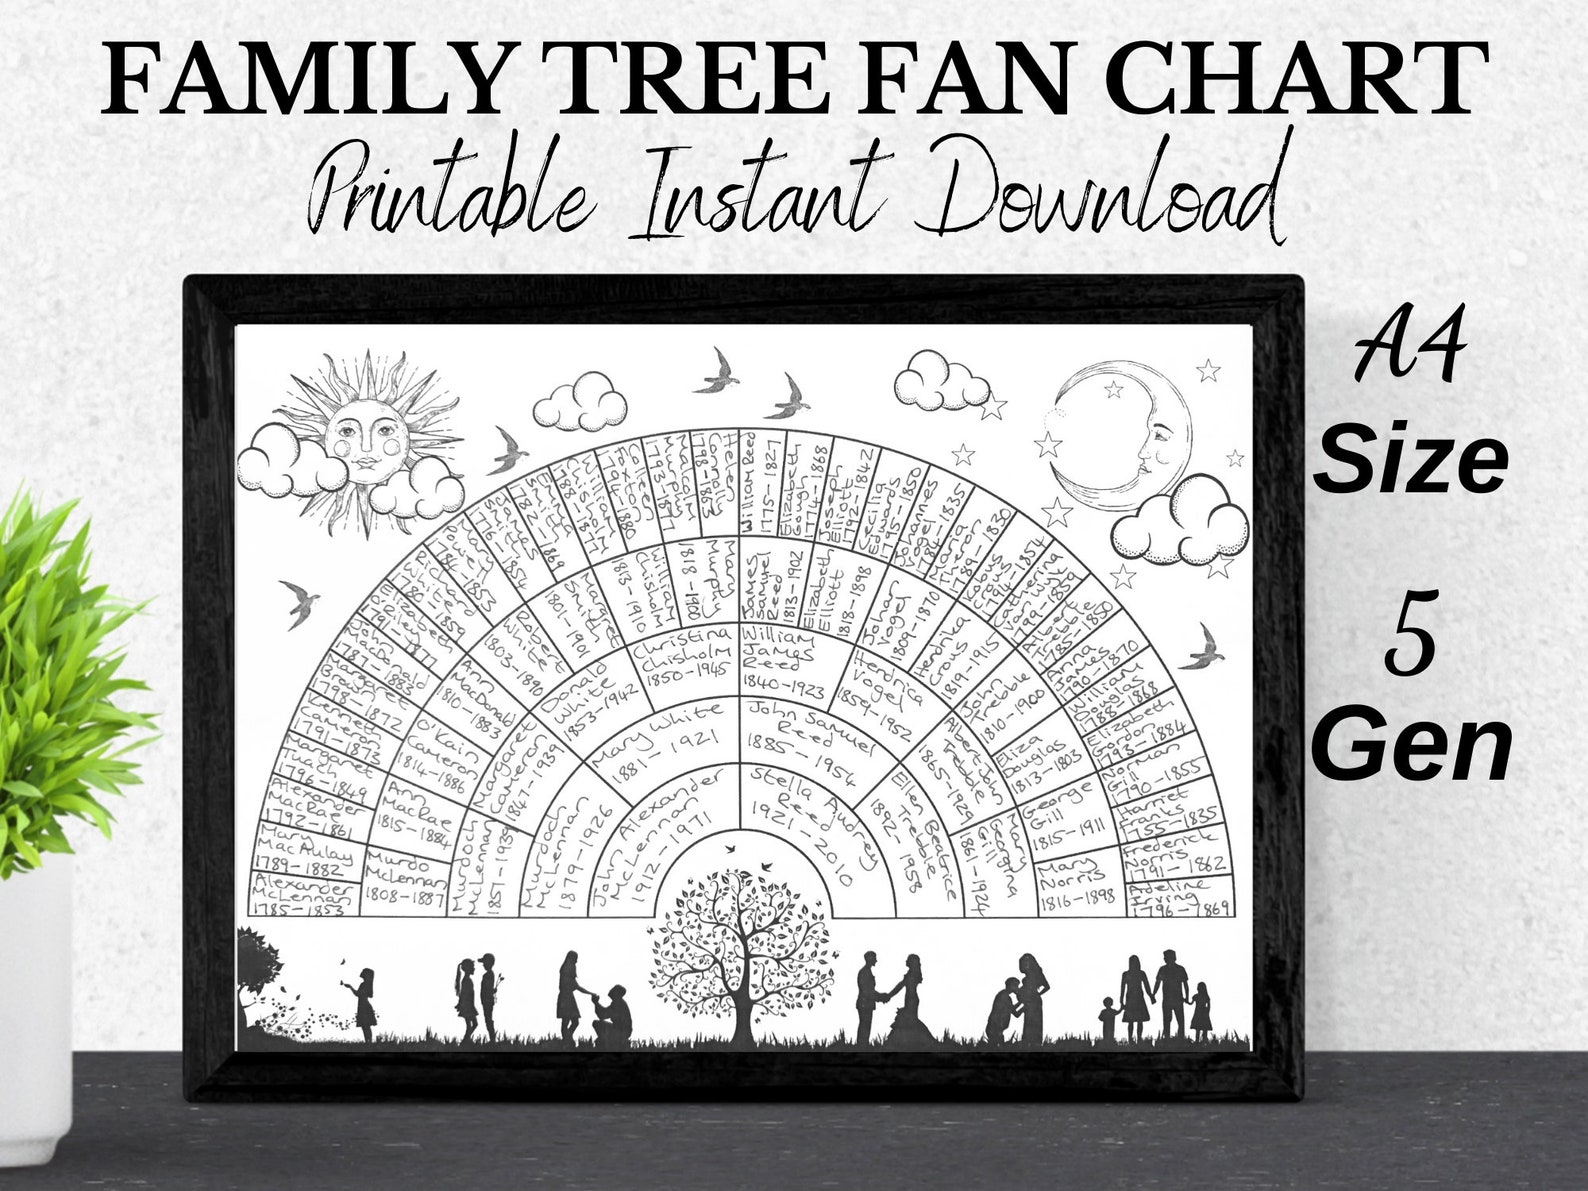 fan-sample-family-tree-charts